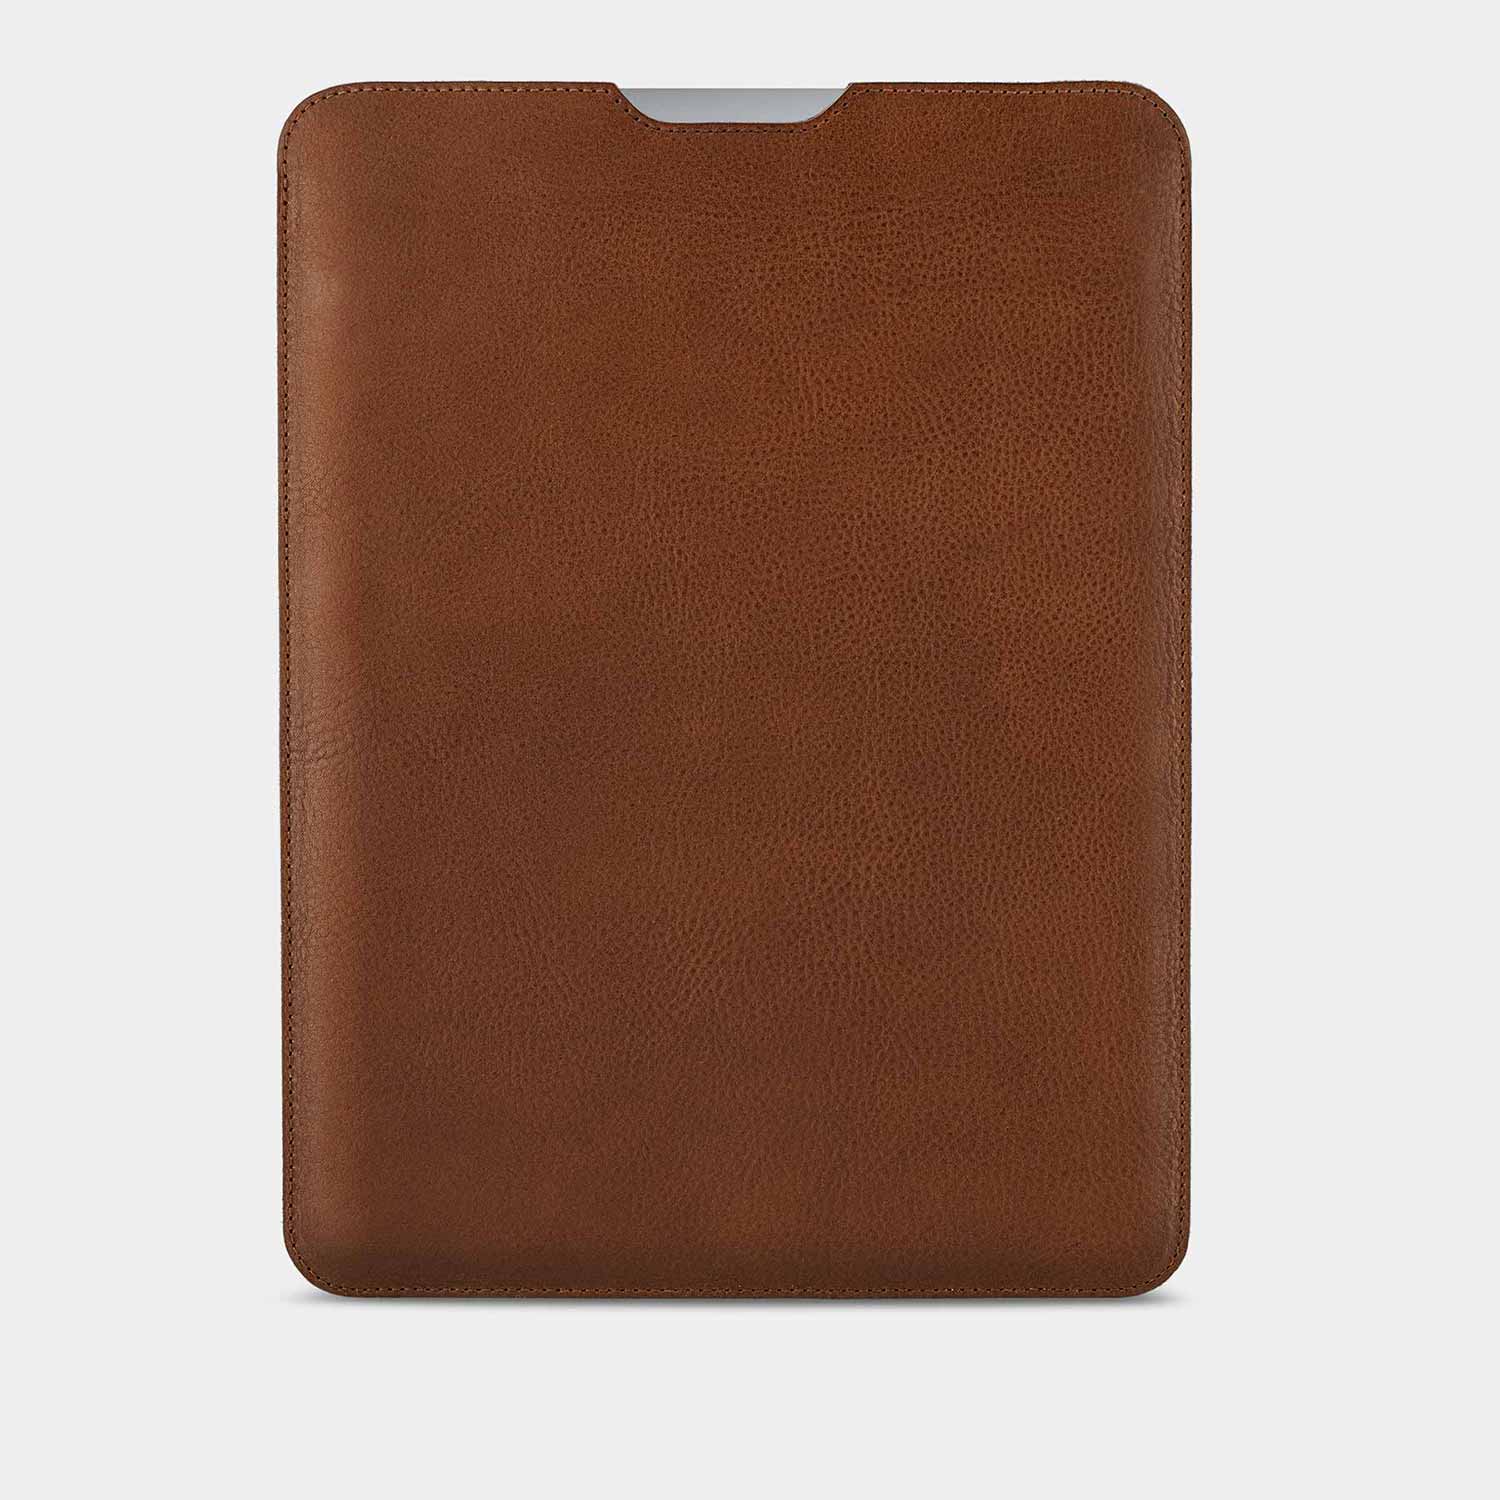 MacBook Sleeve HENRY von Goodwilhelm in der Farbe cognac